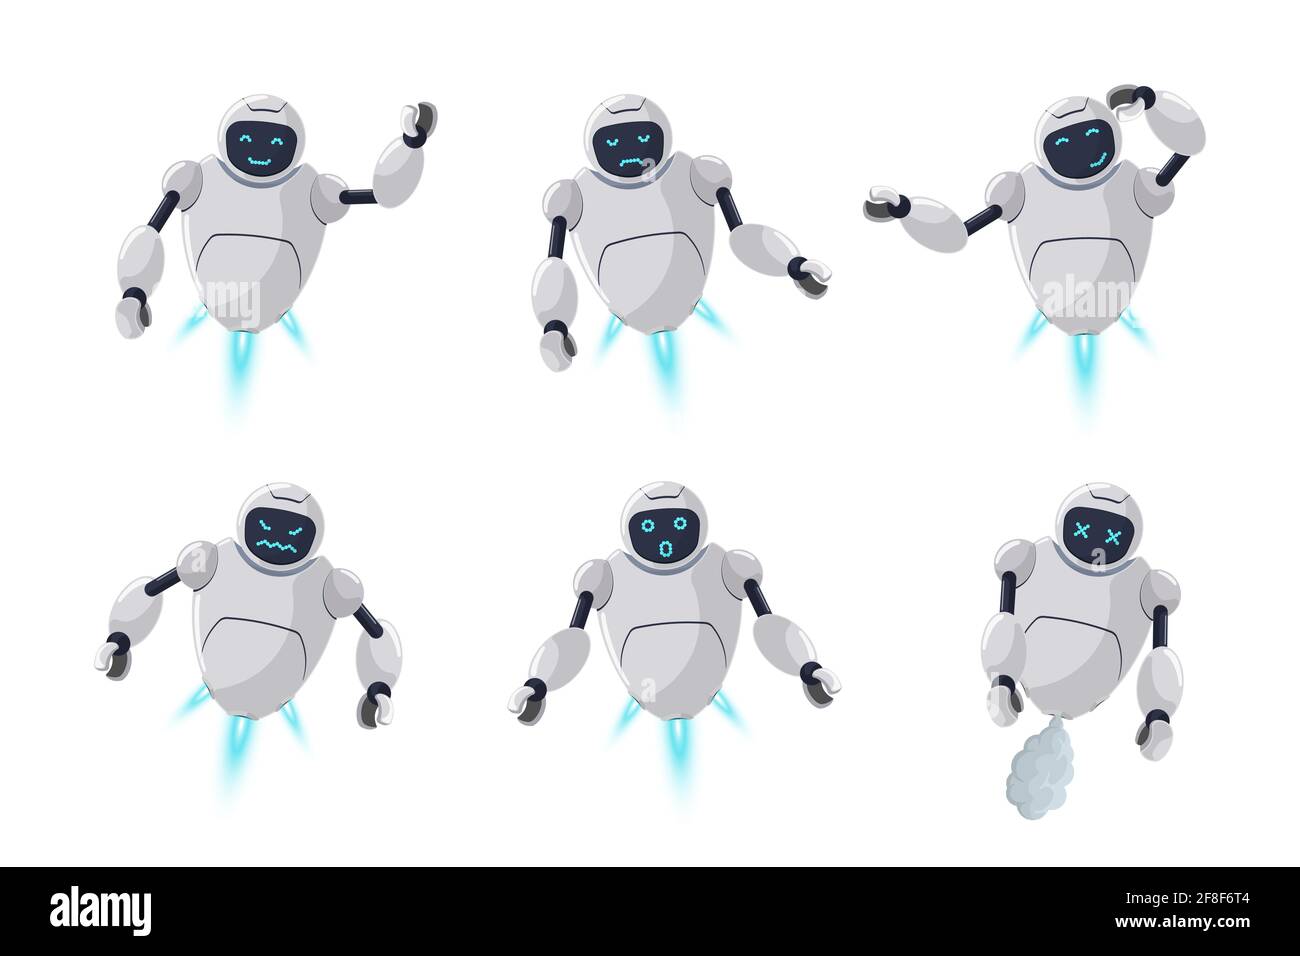 Nette freundliche Roboter Charakter verschiedene Emotionen gesetzt. Futuristische Chatbot Maskottchen verschiedene Aktivitäten Posen. Online bot grüßt, lächeln, traurig, böse, überrascht, Denken und kaputt. Technische Karikatur eps Illustration Stock Vektor